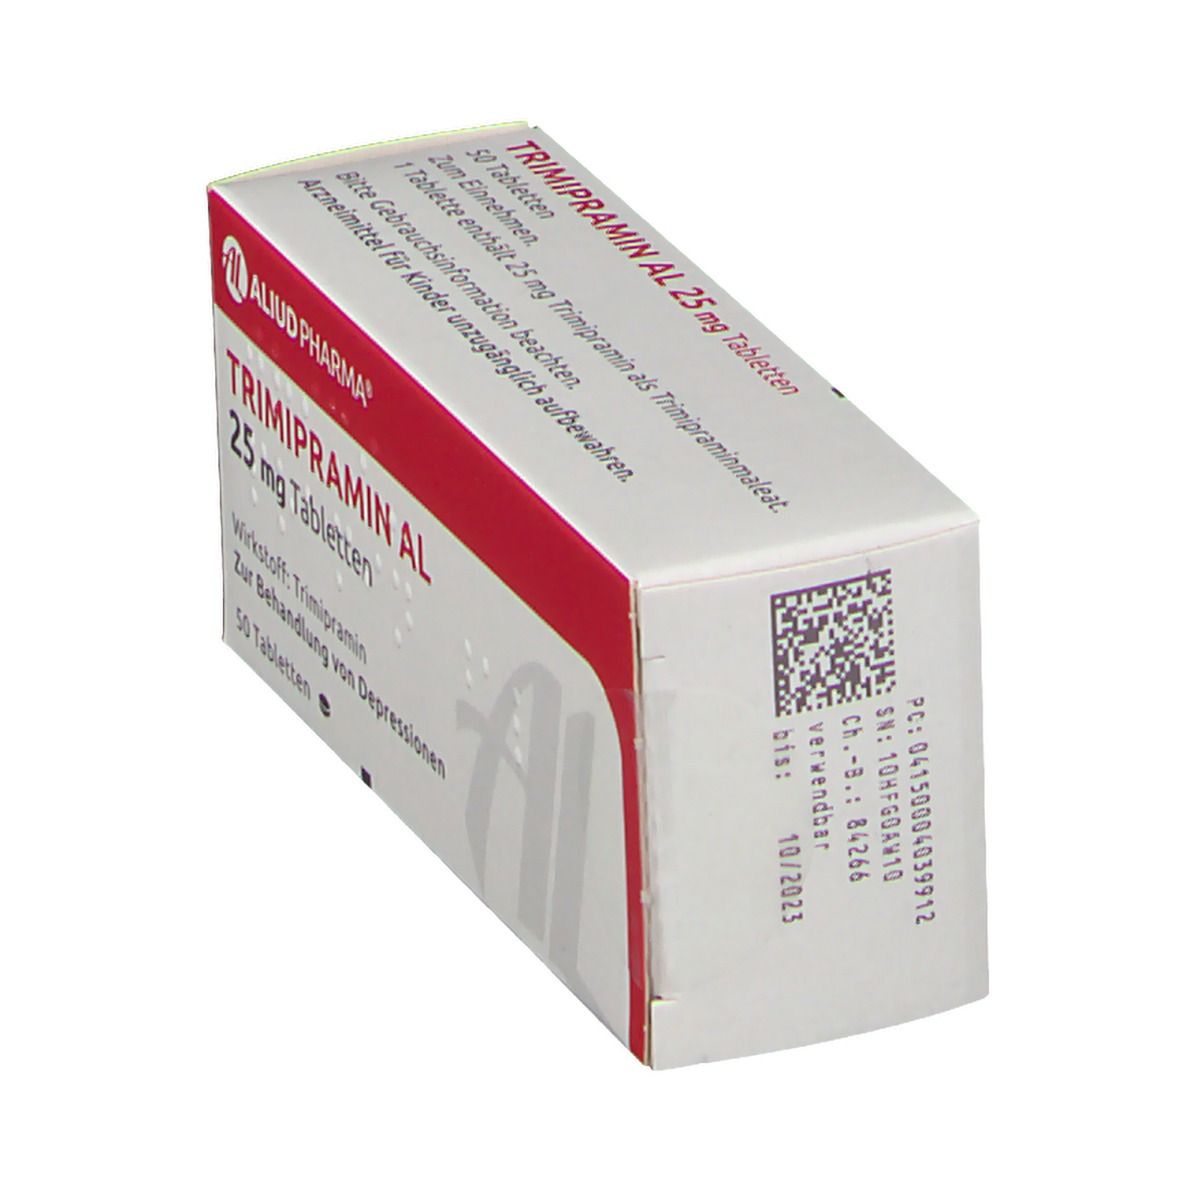 Trimipramin AL 25 mg